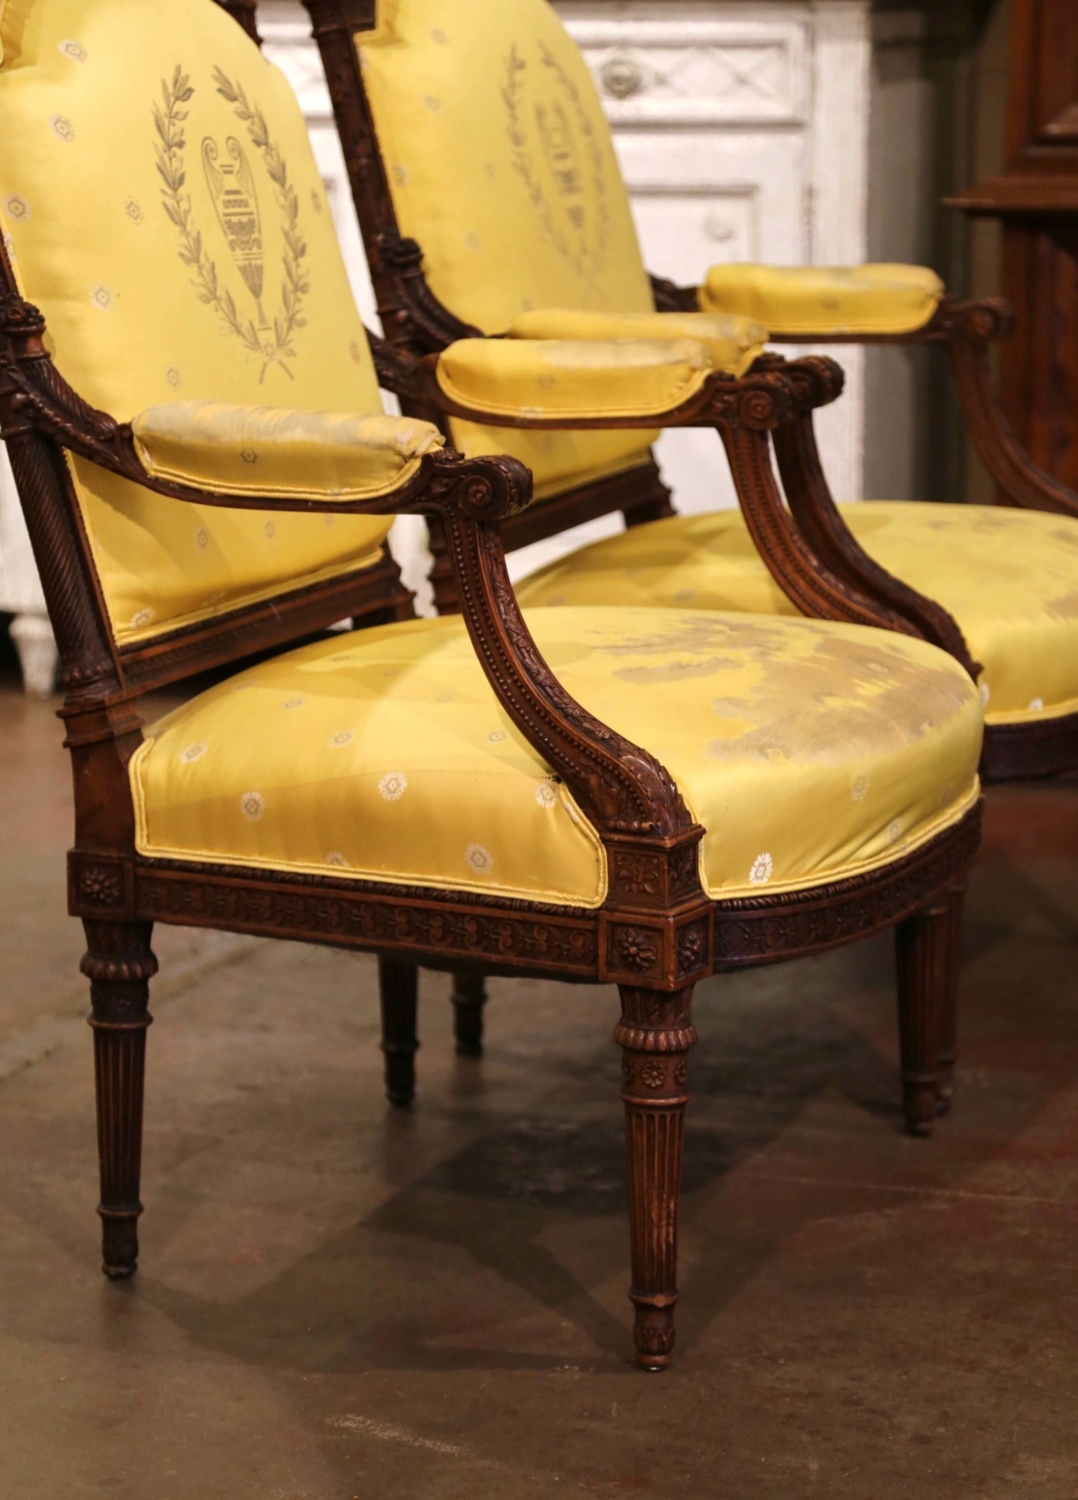 Pair of 19th century Louis XVI Walnut Armchairs with Original